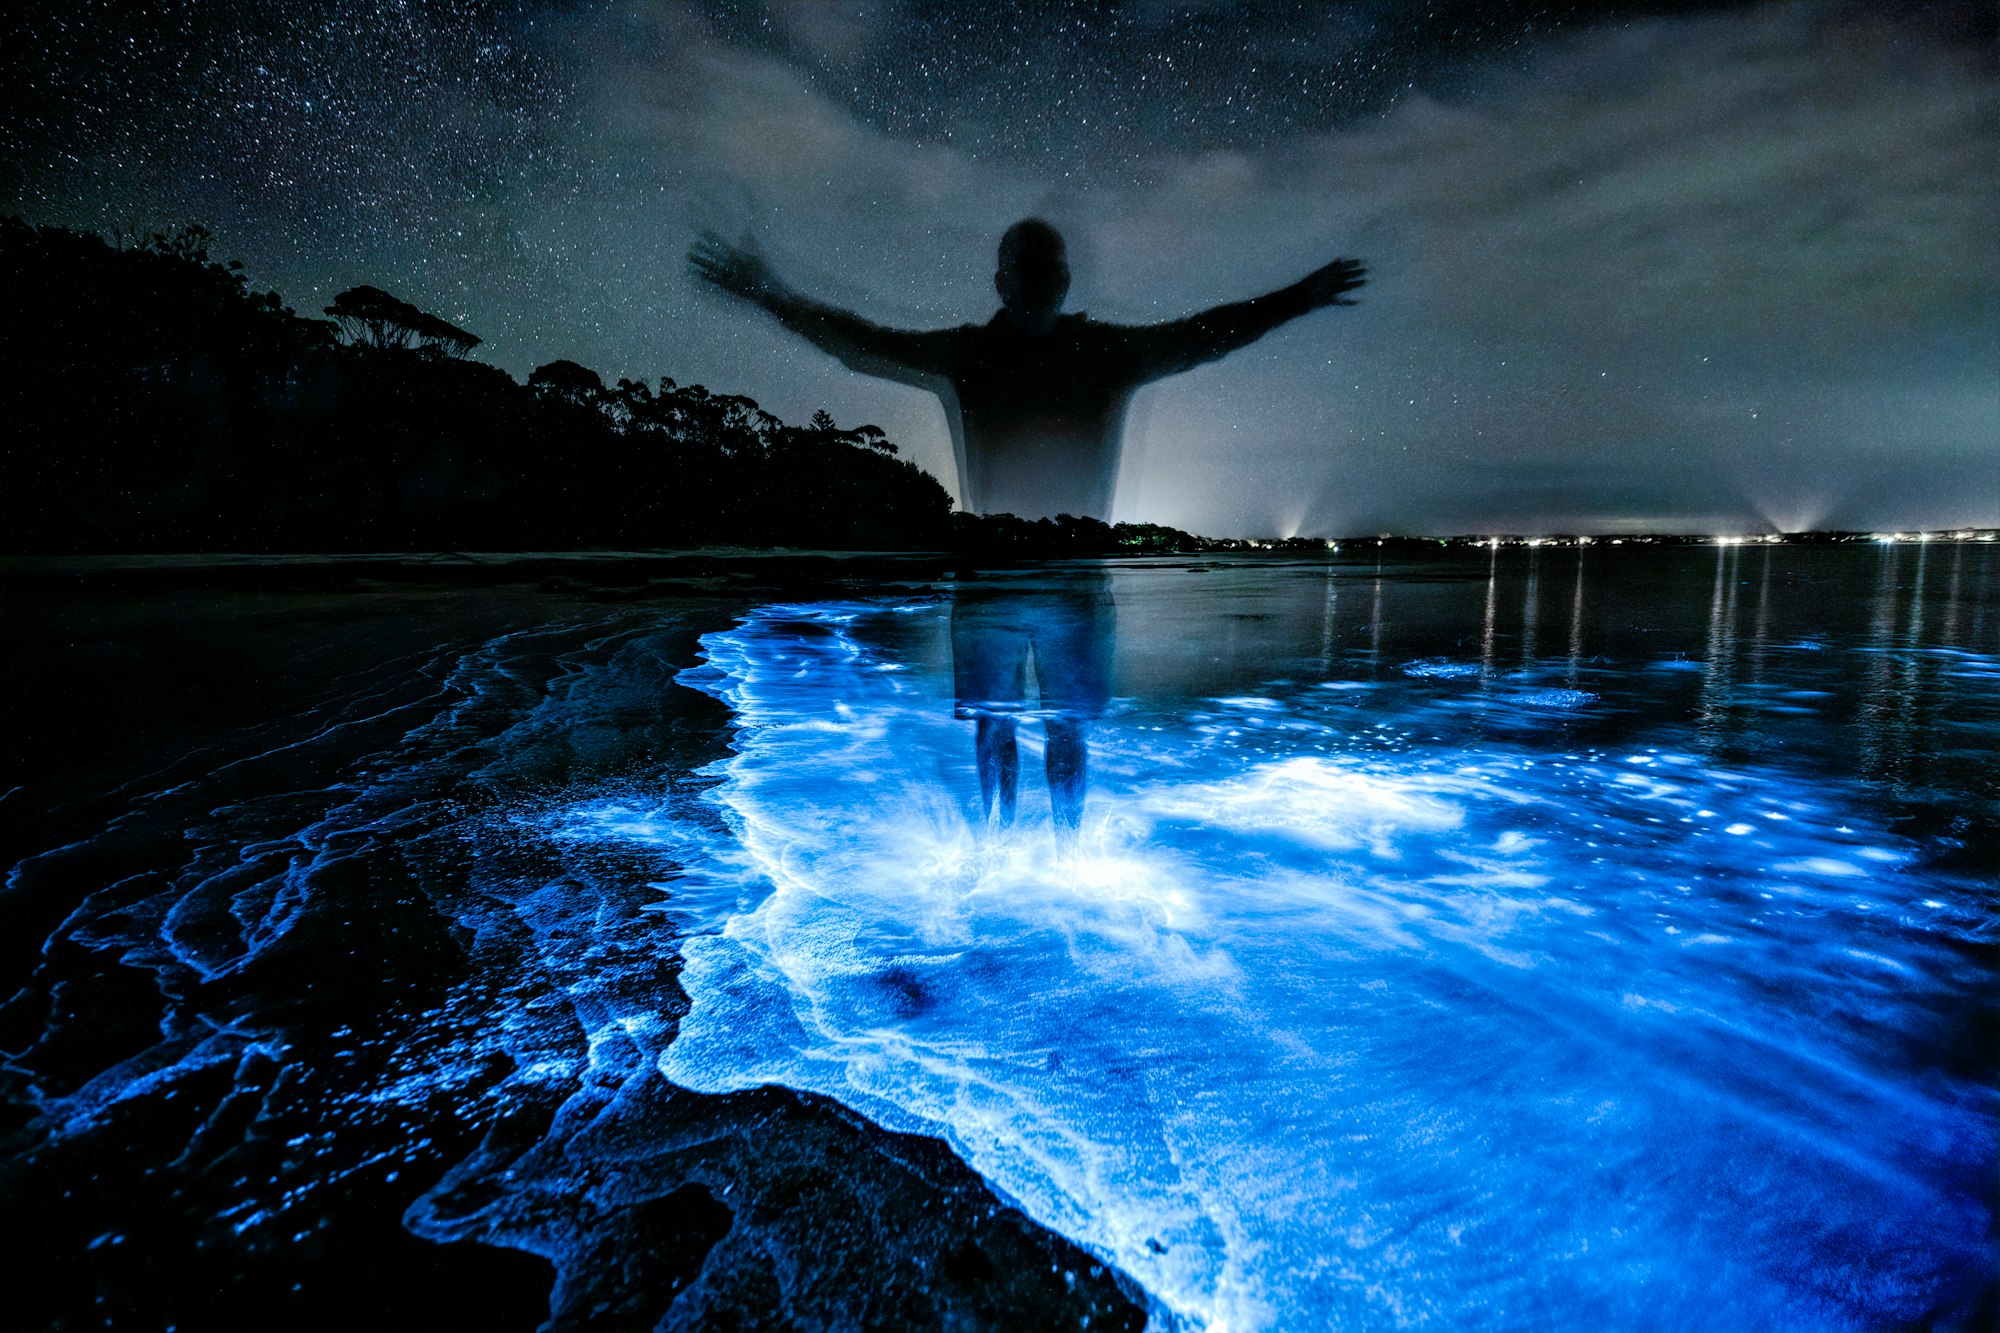 Bioluminescent Plankton Turn the Sea Shiny Blue at Night! 🌊💙